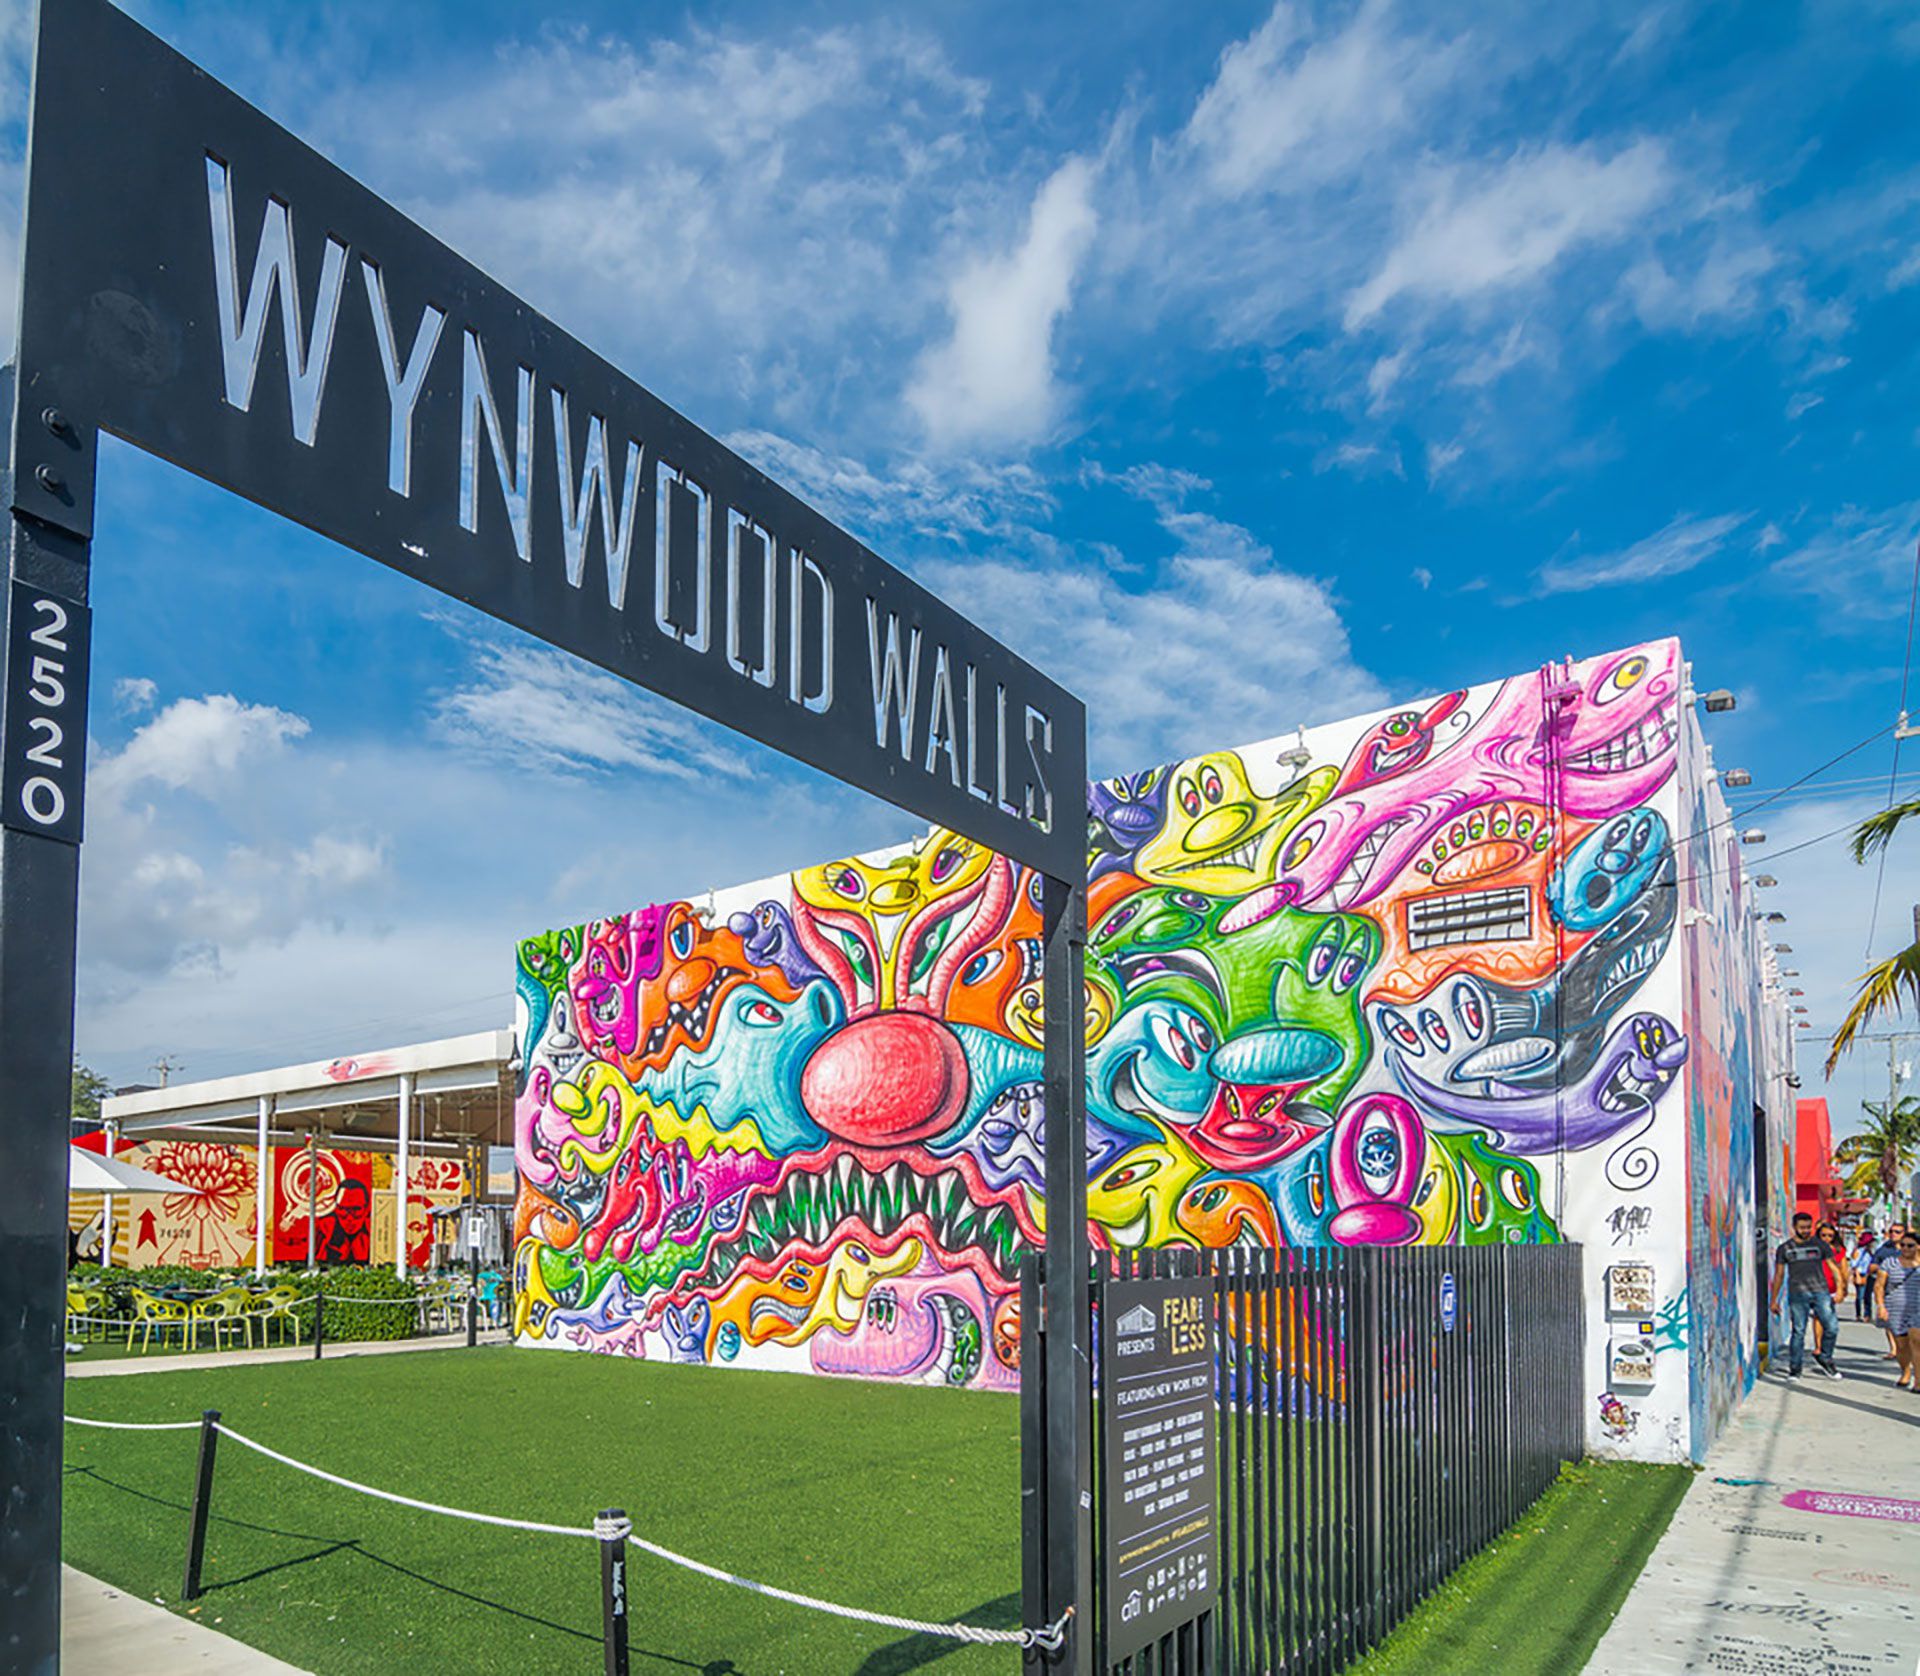 NW 2nd Avenue es segunda en el ranking por su destacada presencia en Instagram. (Wynwood Walls)